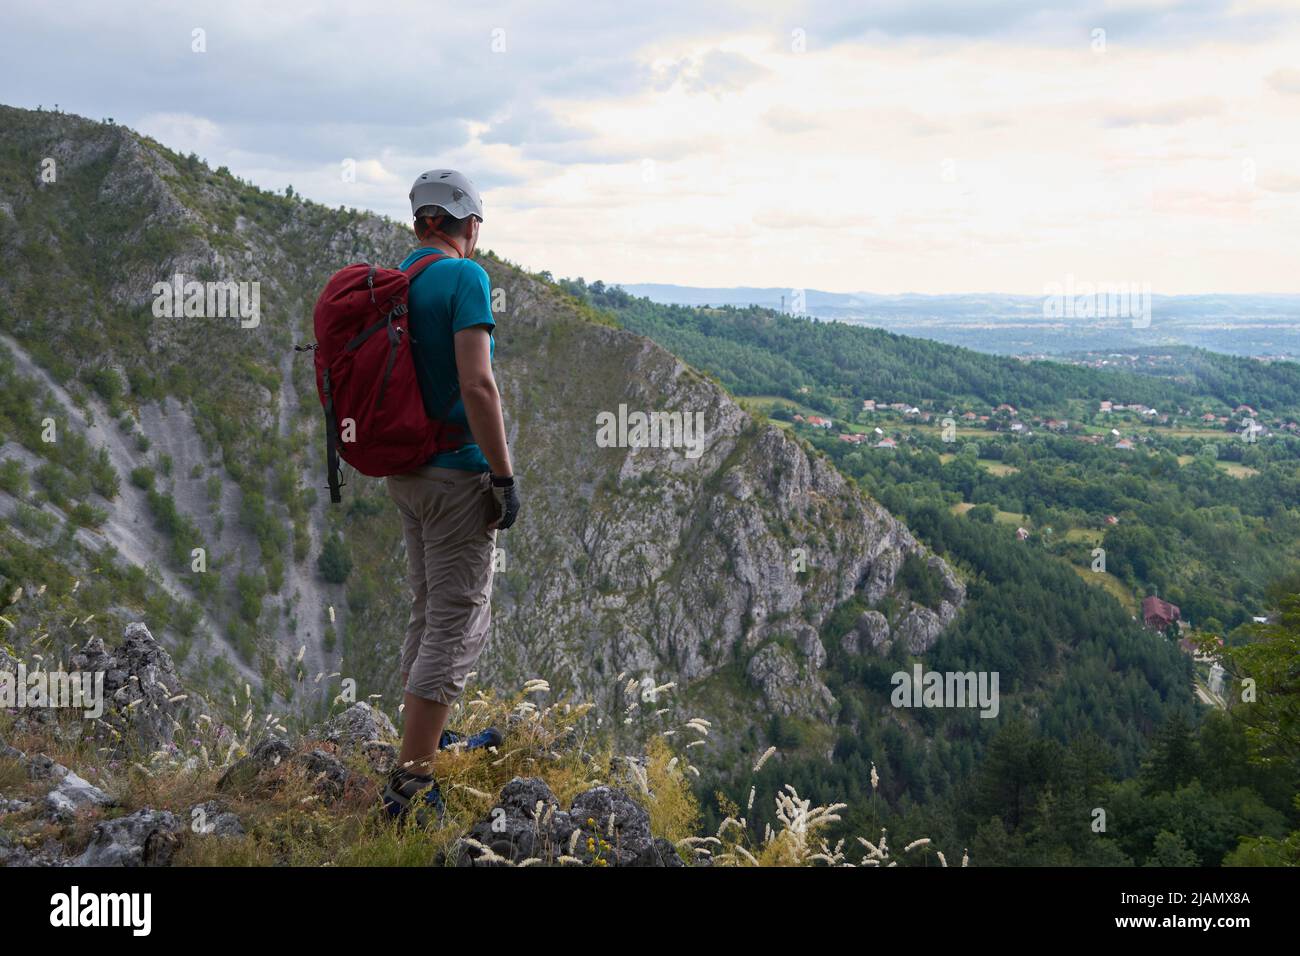 Mann mit alpinem Kletterhelm, rotem Rucksack und Dreiviertel-Sporthose, am Rande einer Bergklippe, blickt in die Ferne. Bergsteigen Co Stockfoto